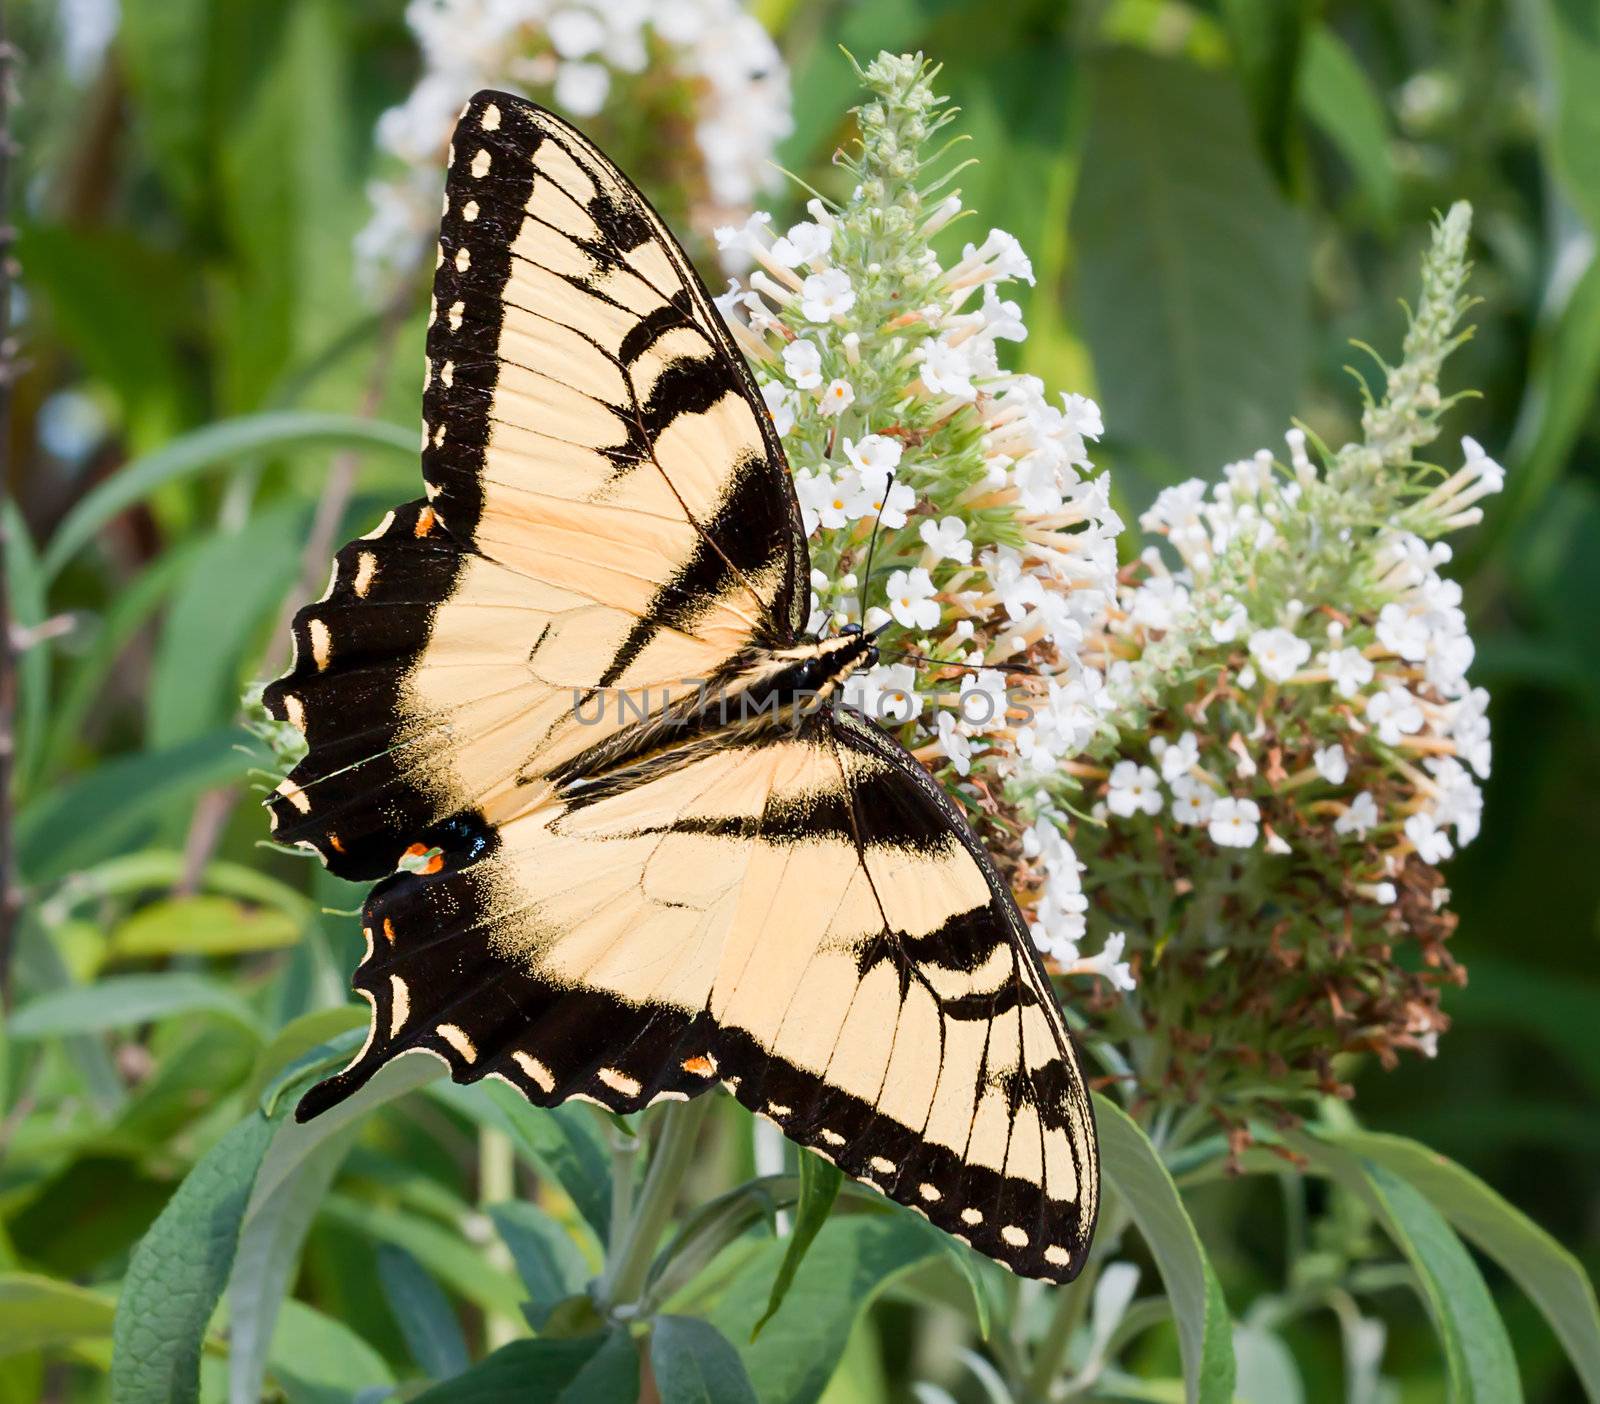 Eastern Tiger Swallowtail Butterfly by sbonk